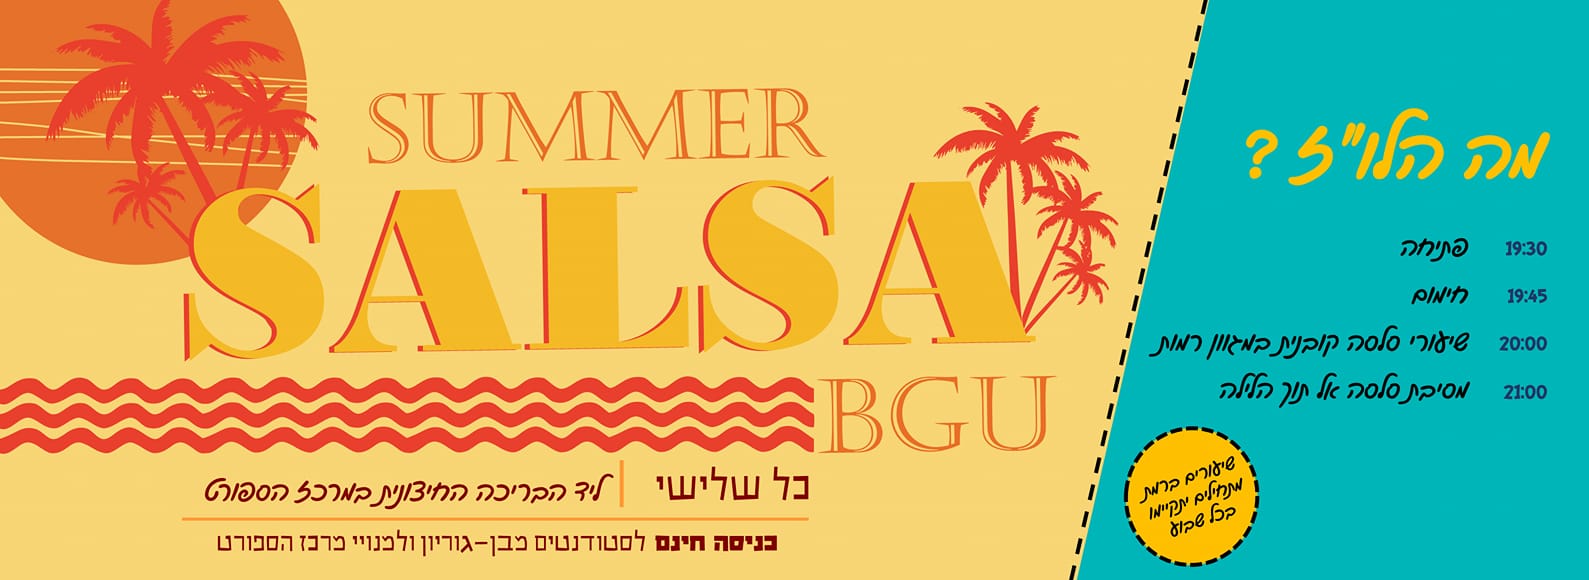 מתוך דף הפייסבוק 'Summer Salsa BGU'